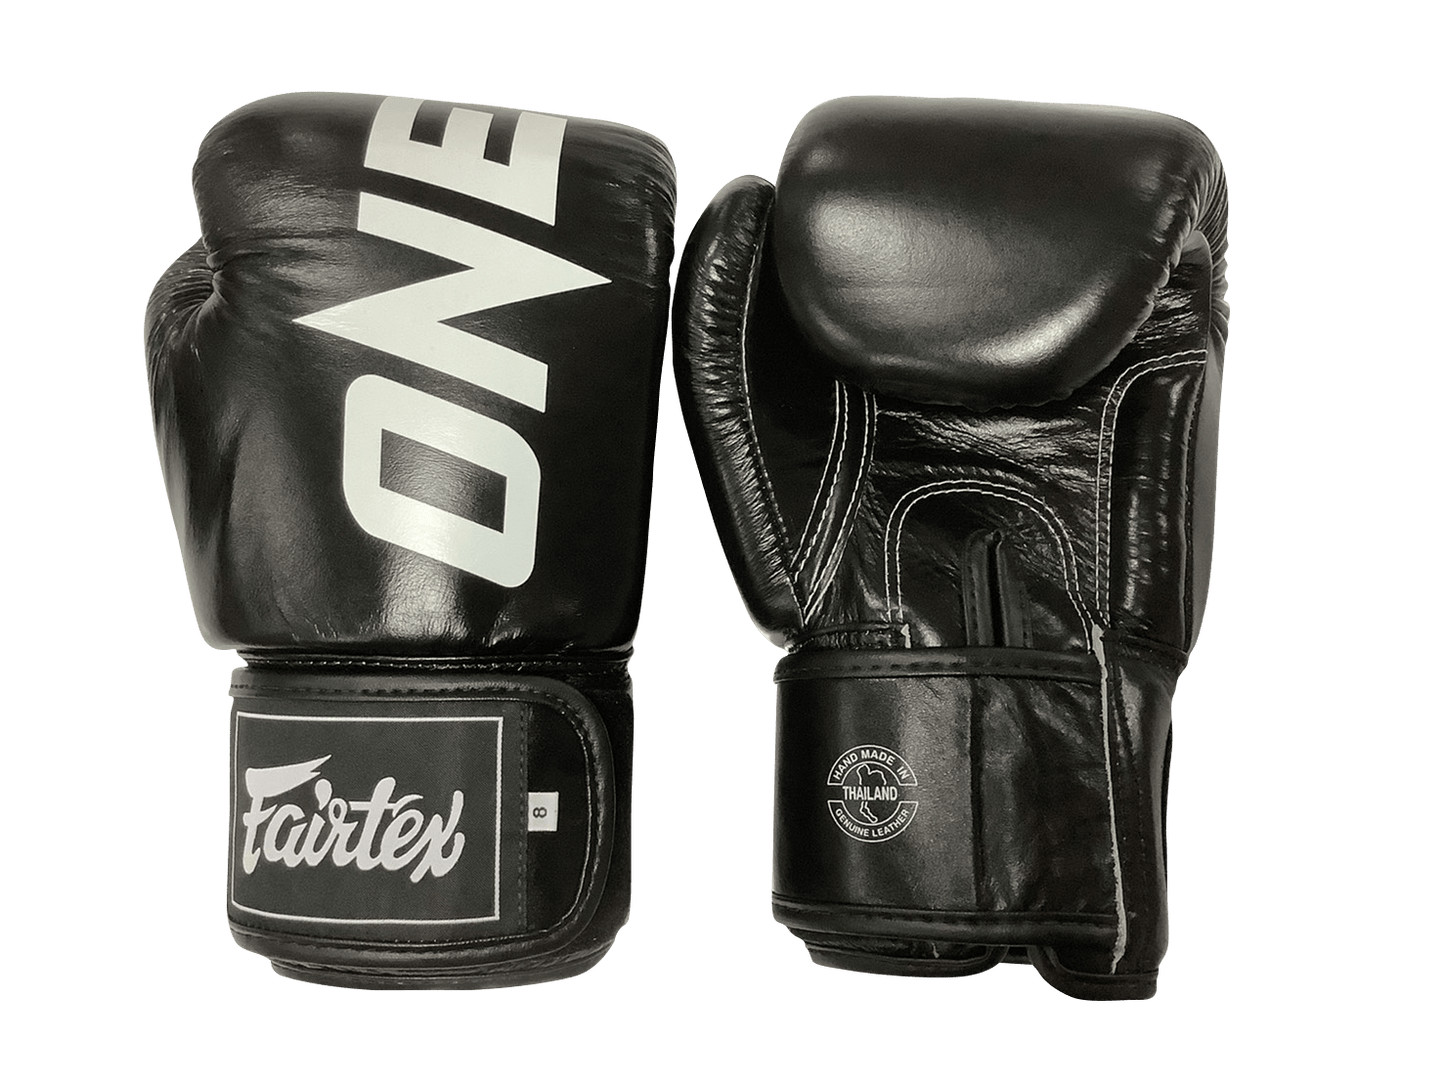 Fairtex Boxing Gloves BGV1 "ONE" Black Fairtex